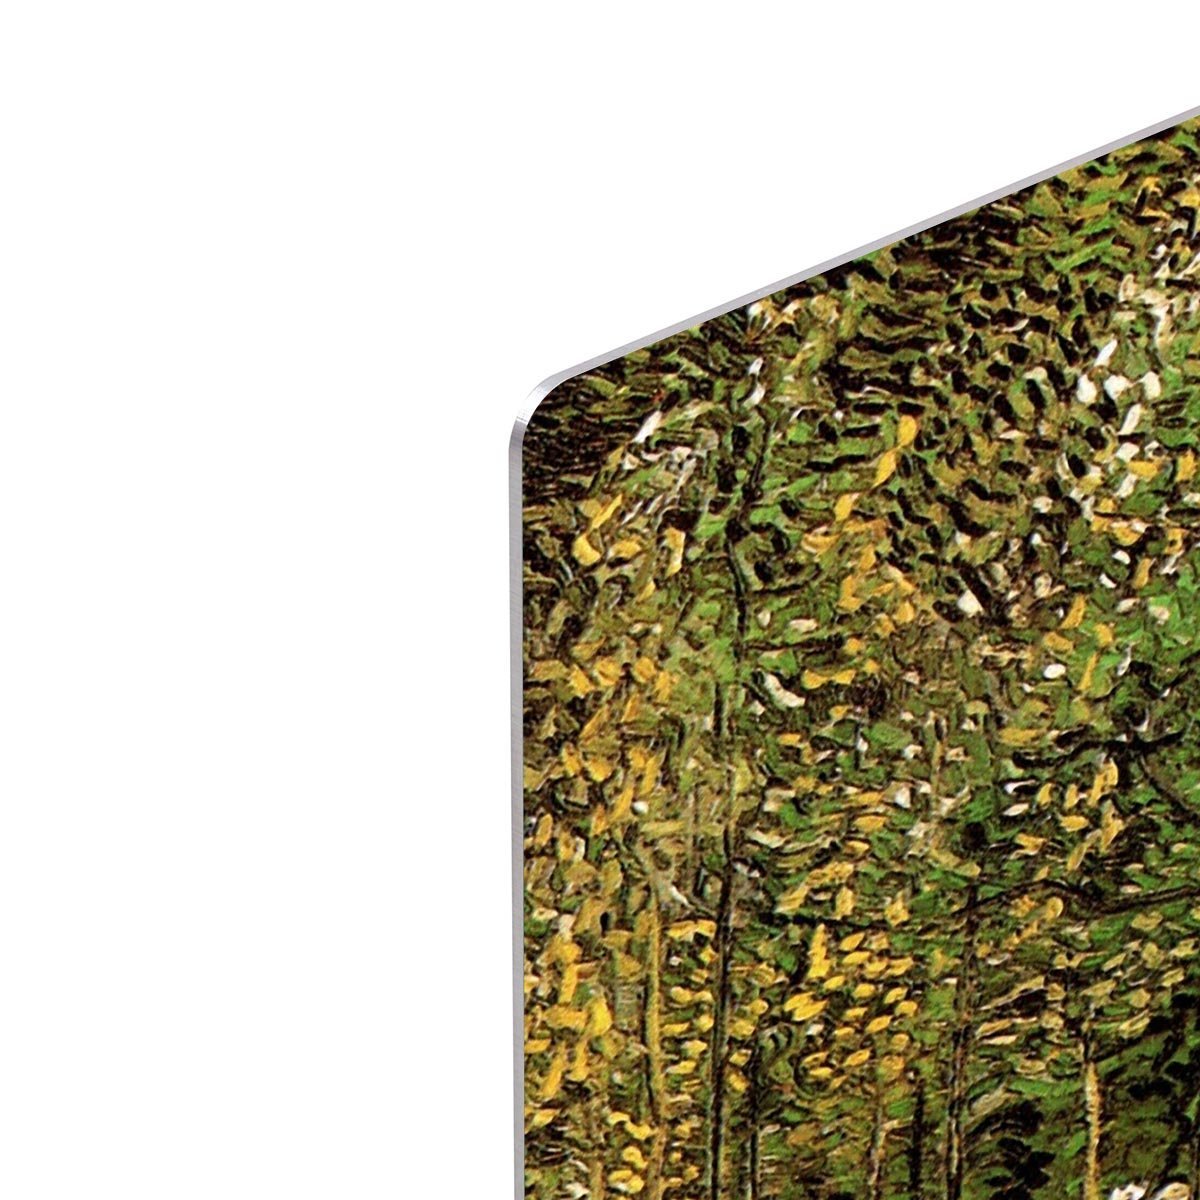 The Grove by Van Gogh HD Metal Print